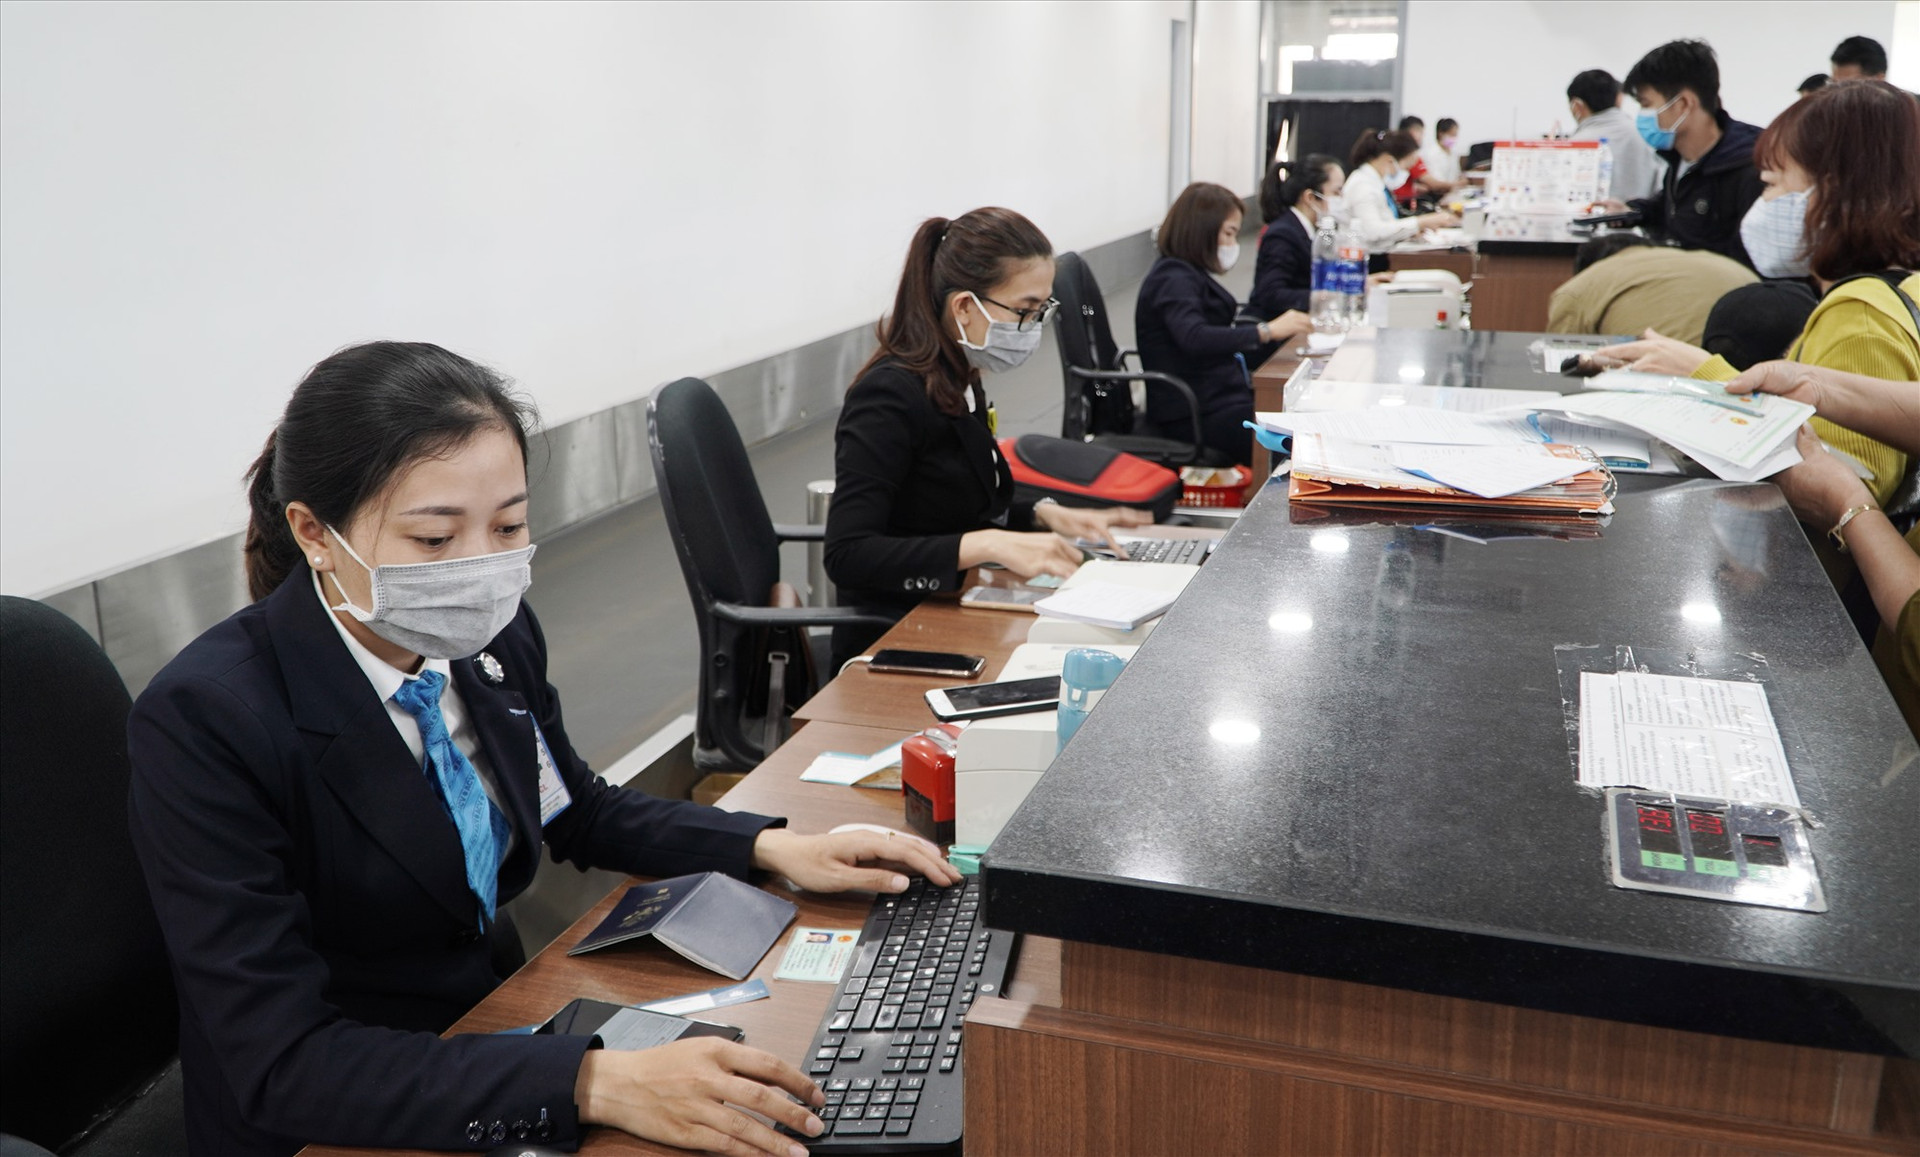 Toàn bộ nhân viên của Càng hàng không Chu Lai đều mang khẩu trang khi làm việc. Ảnh: VINH THẮNG